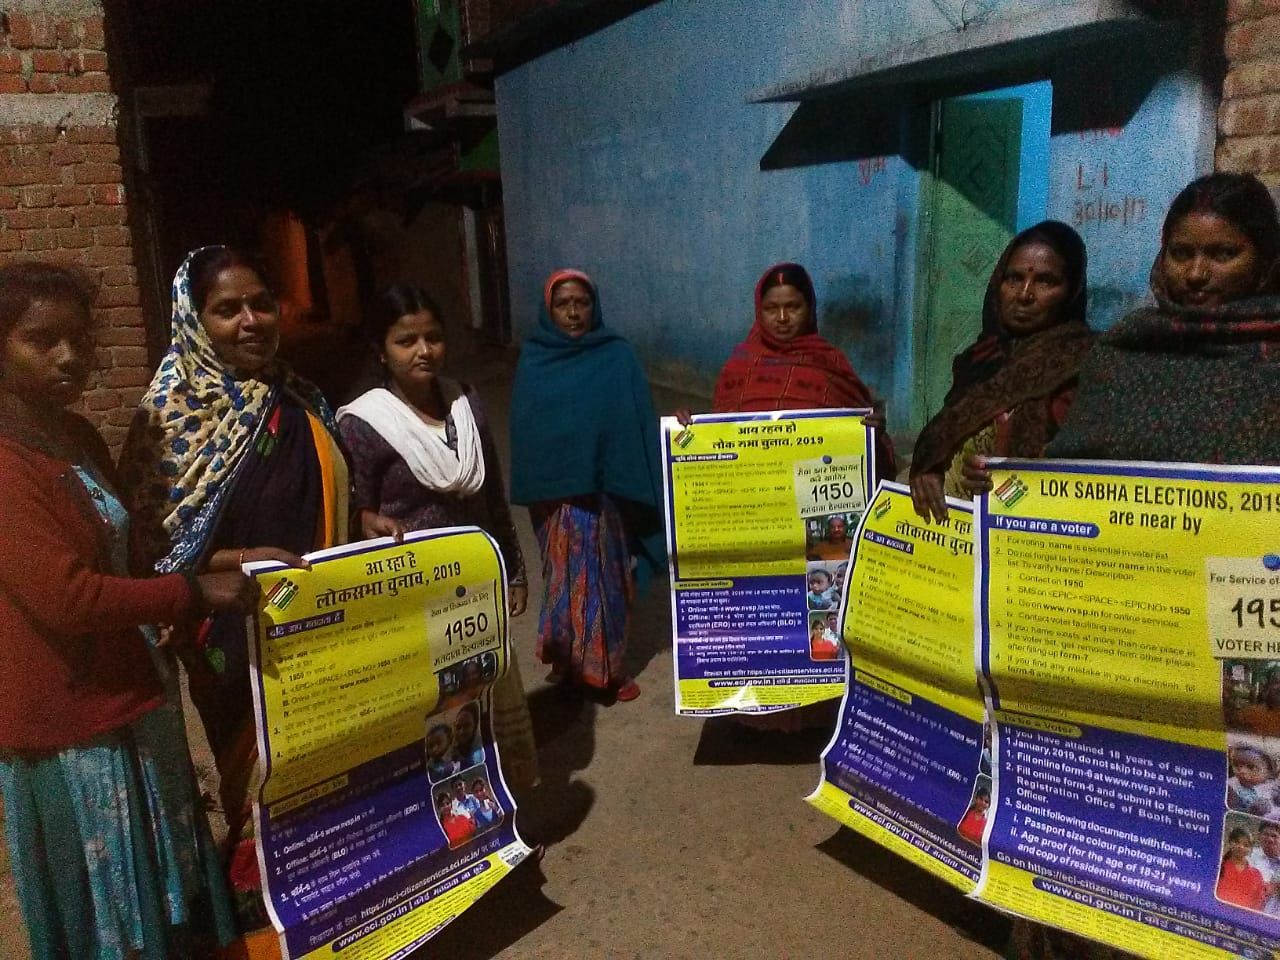 मतदाता जागरूकता अभियान के तहत् देवघर जिले के विभिन्न प्रखण्डों में मतदाताओं को जागरूक करने हेतु रात्रि चौपाल का आयोजन किया गया।